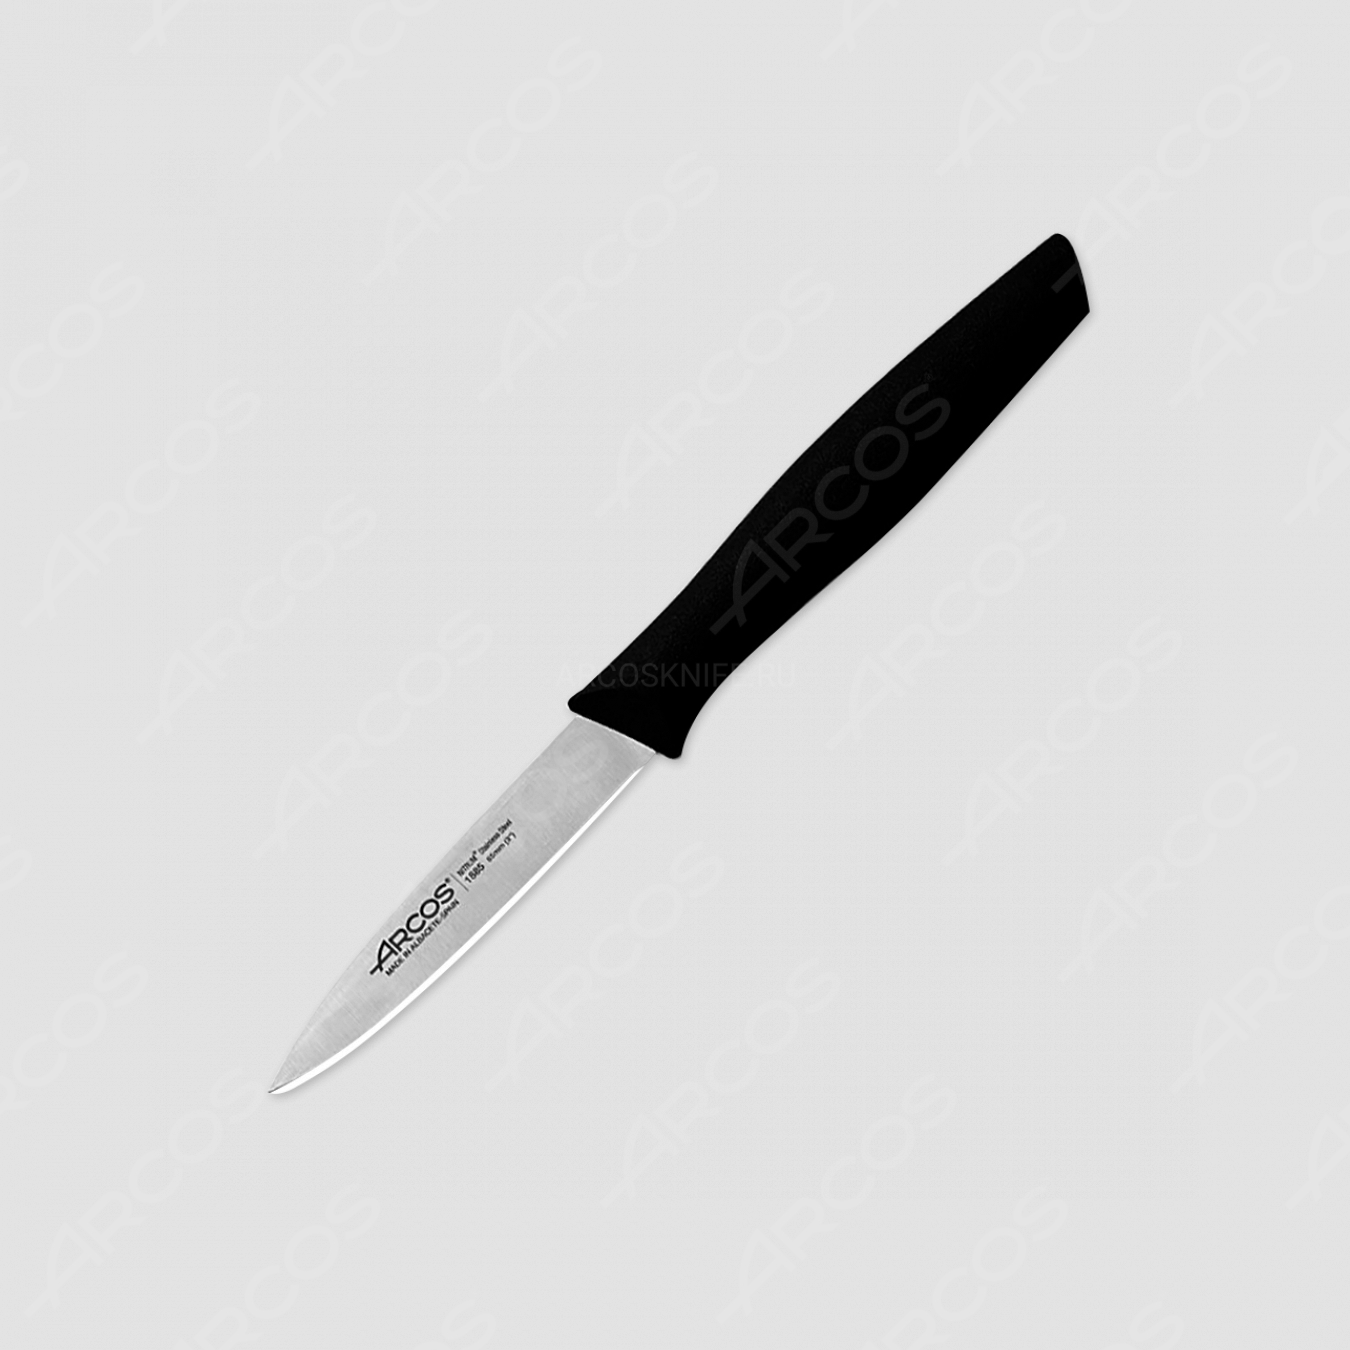 Нож кухонный для чистки 8,5 см, рукоять черная, серия Nova, ARCOS, Испания